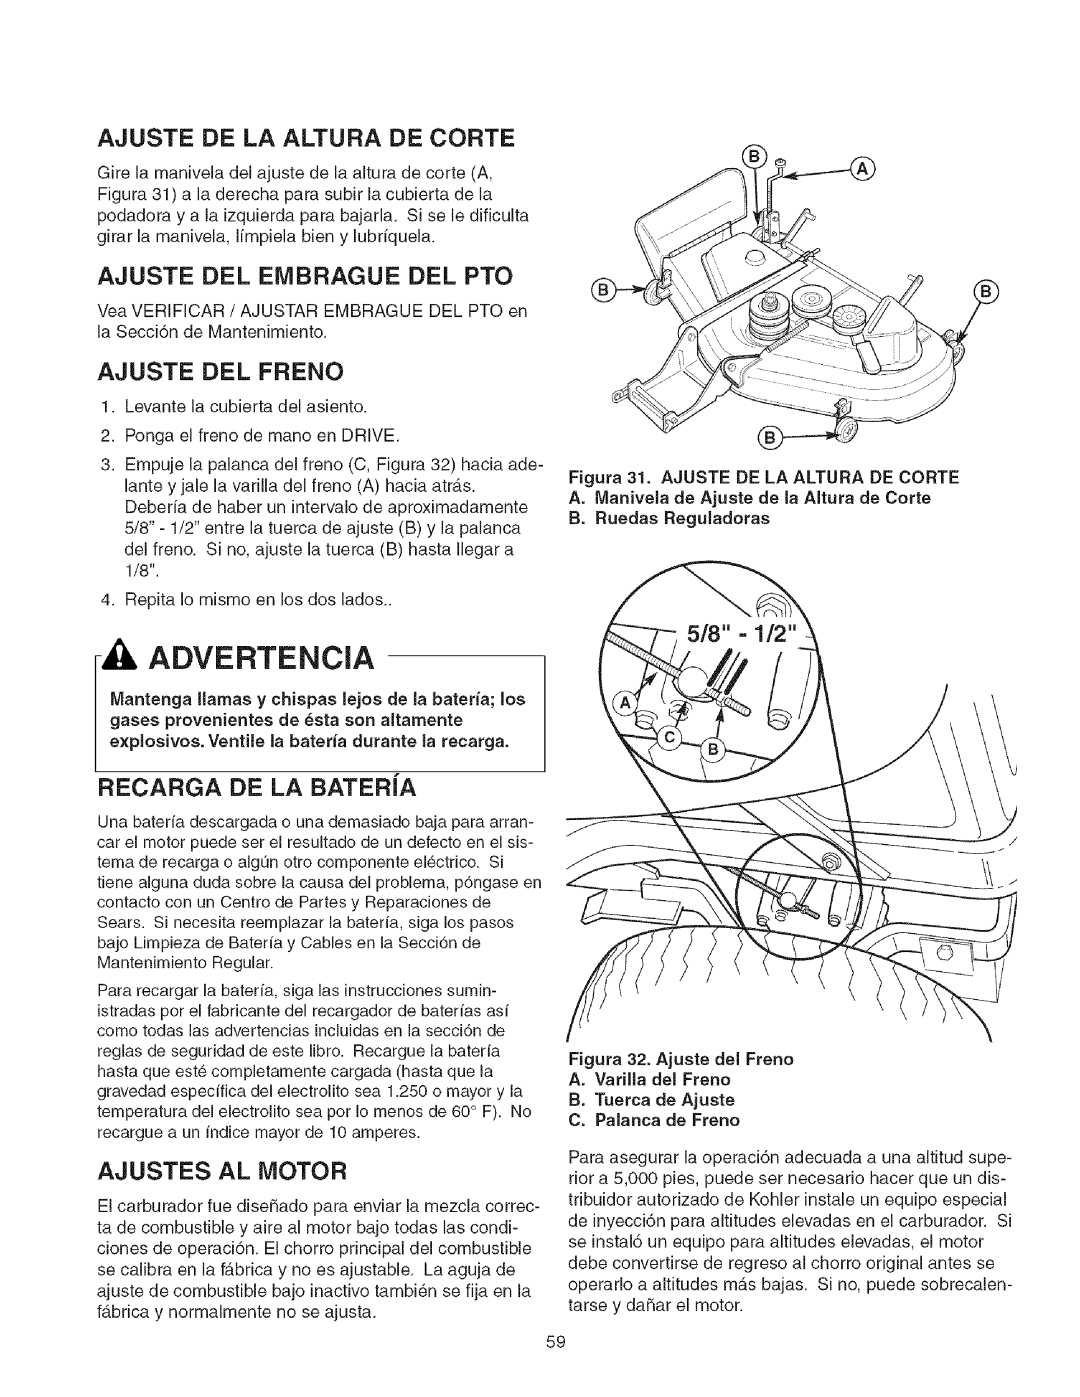 Craftsman 107.2777 manual A Advertencia, Ajuste De La Altura De Corte, Ajuste Del Embrague Del Pto, Ajuste Del Freno 